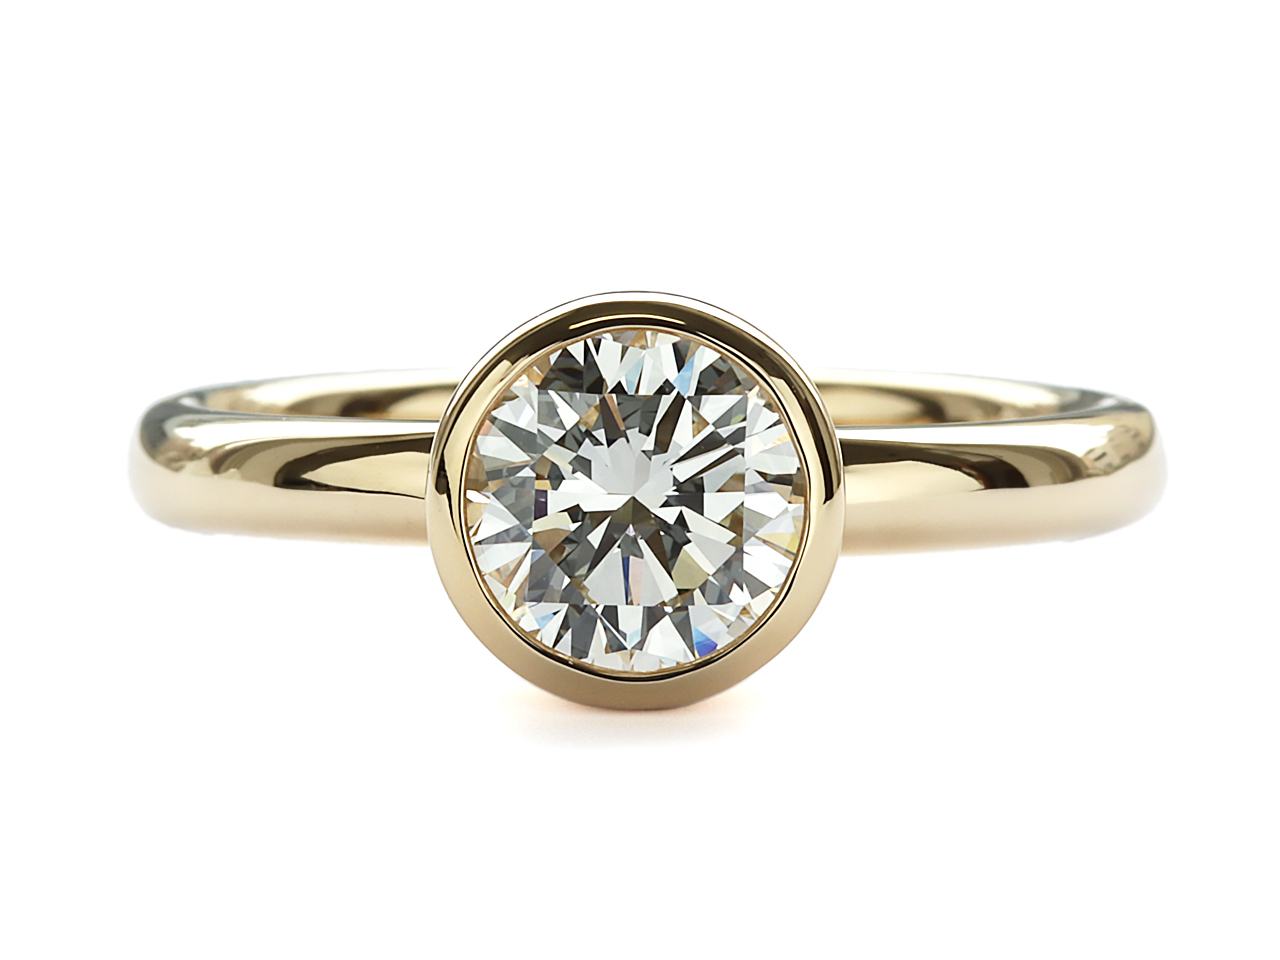 【11783話】婚約指輪とは別のシーンで使えるダイヤモンドリングにリフォーム